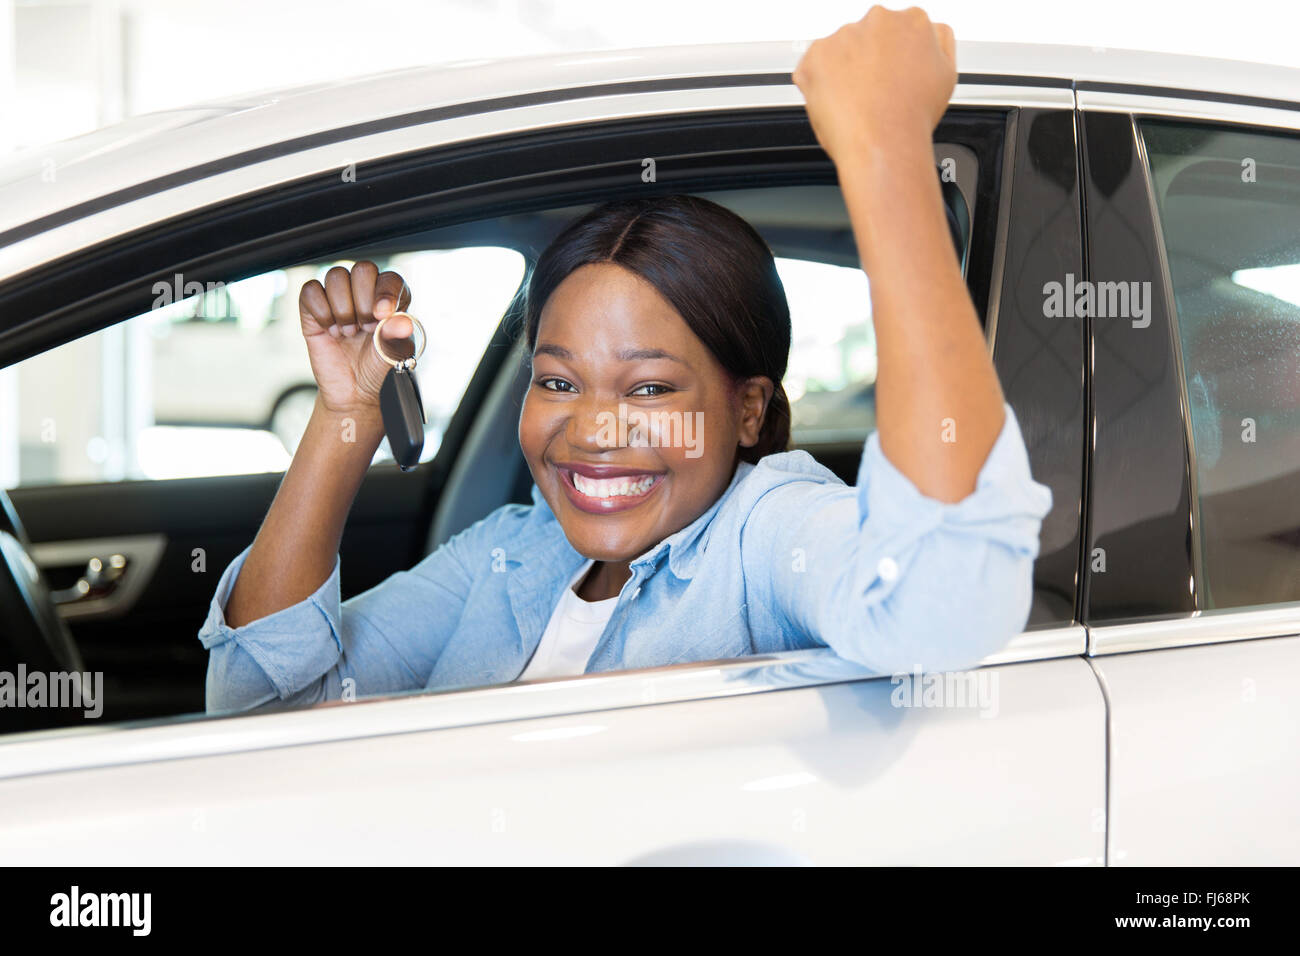 Cheerful young African woman montrant sa nouvelle clé de voiture chez le concessionnaire Banque D'Images